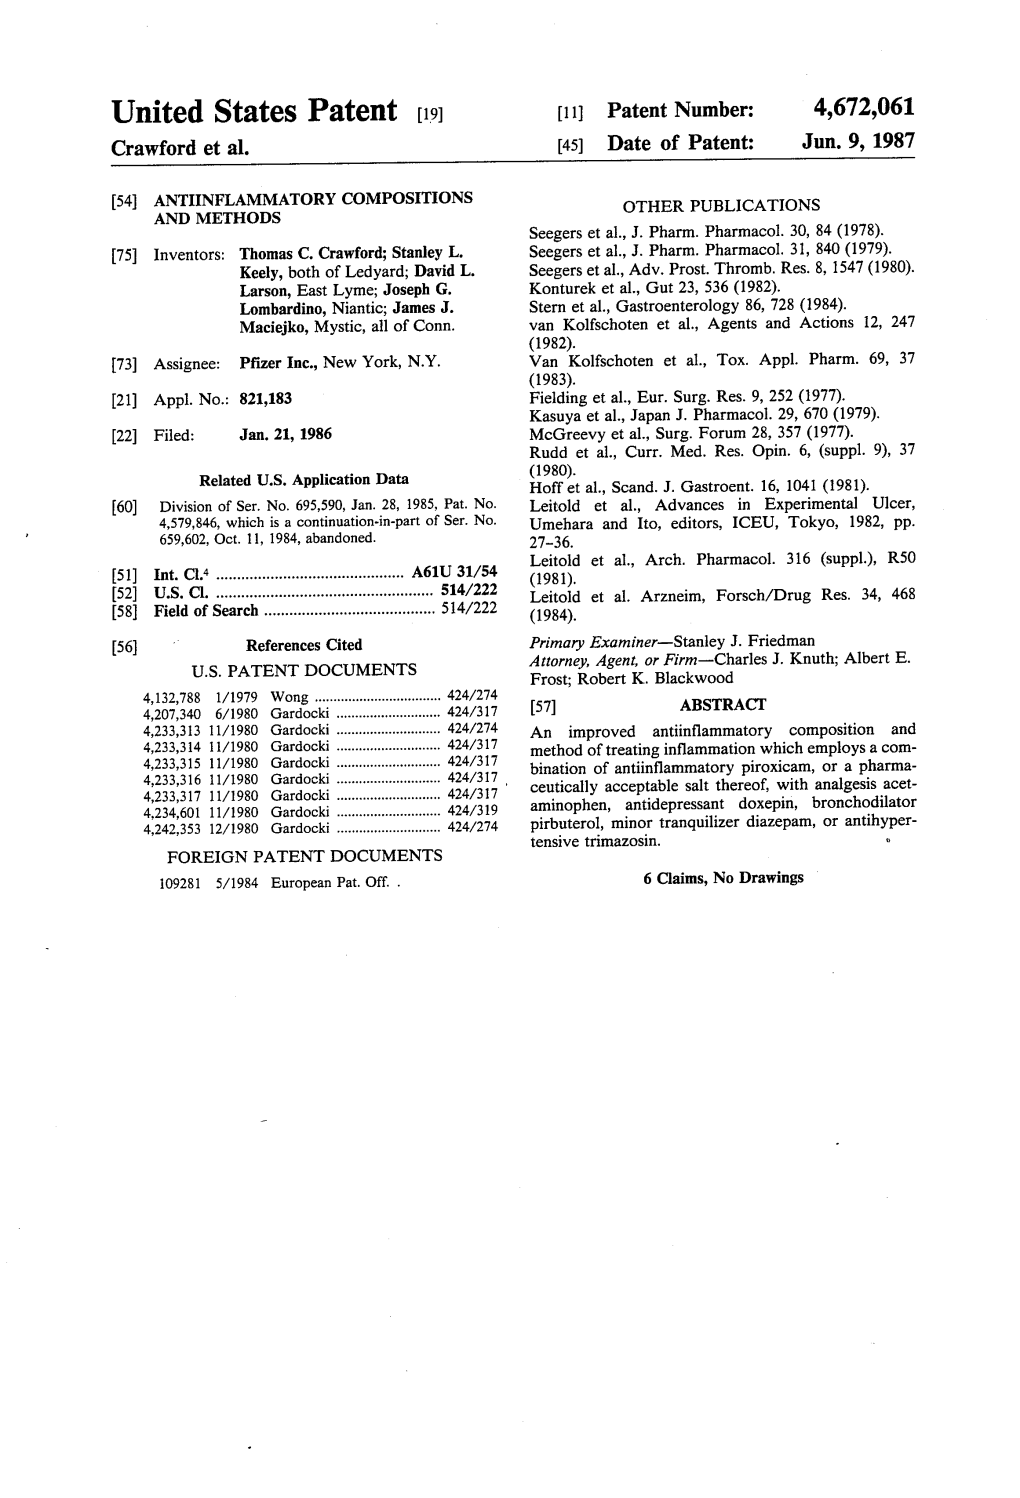 United States Patent (19) 11 Patent Number: 4,672,061 Crawford Et Al